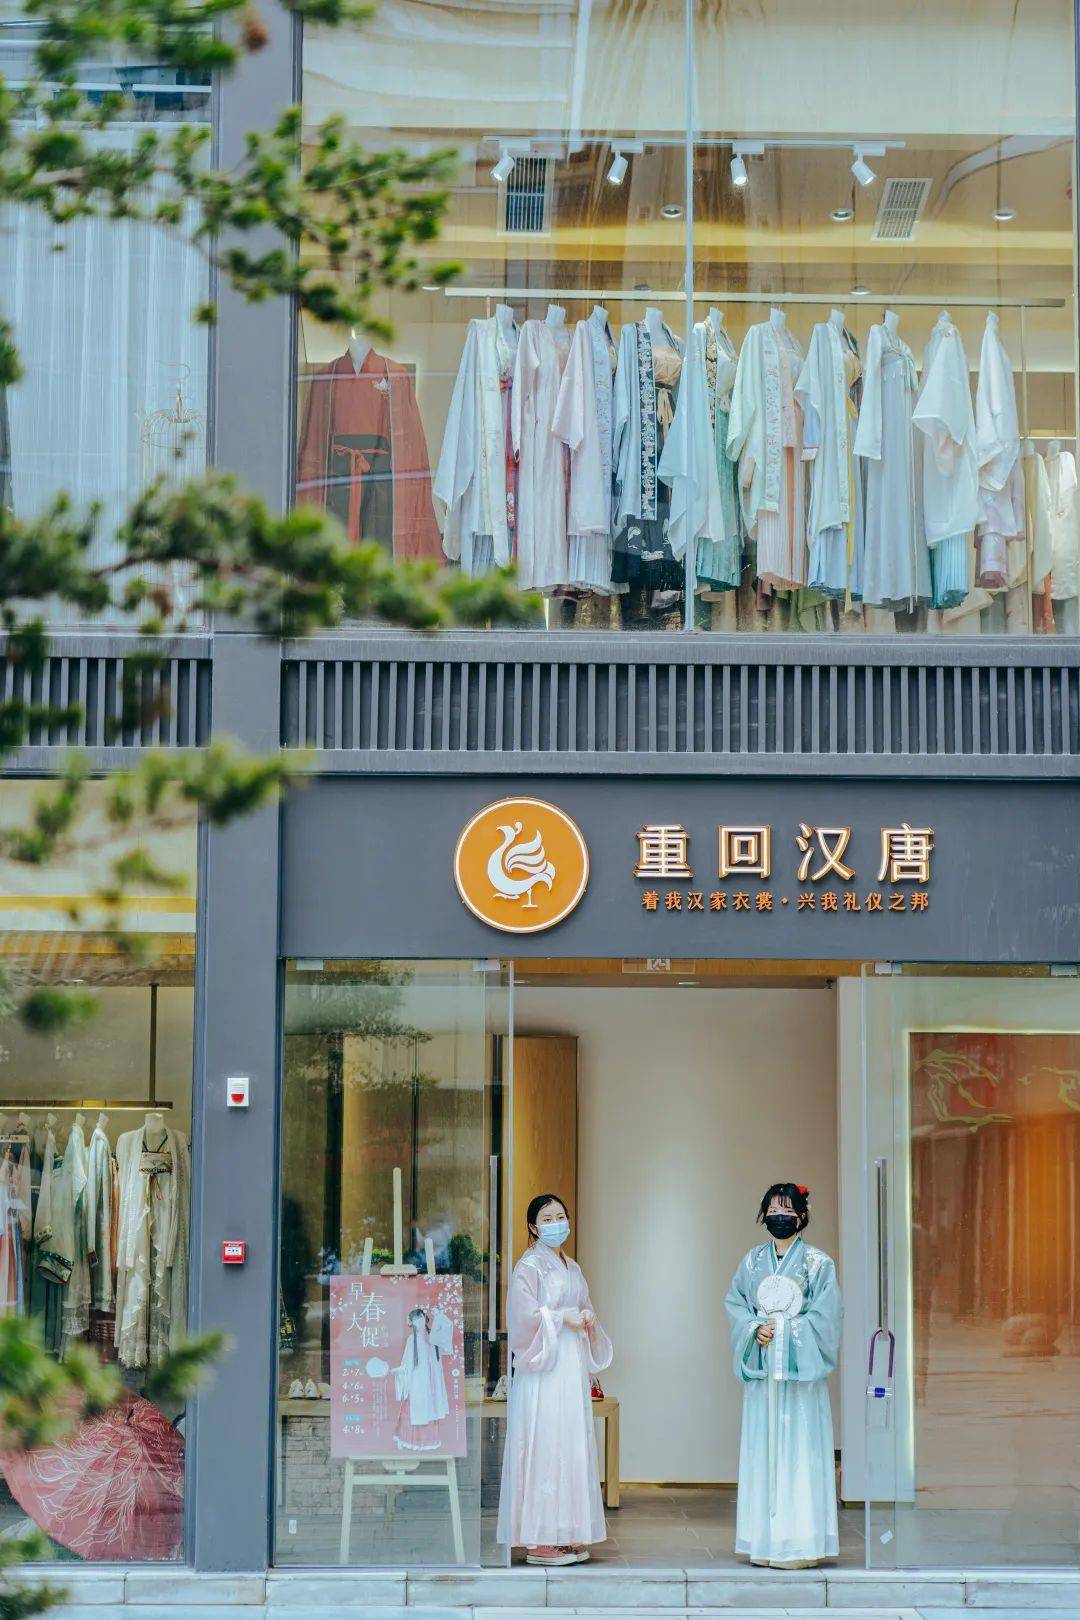 汉服实体店15年从开业不开张到汉文化沉浸式场景化体验店